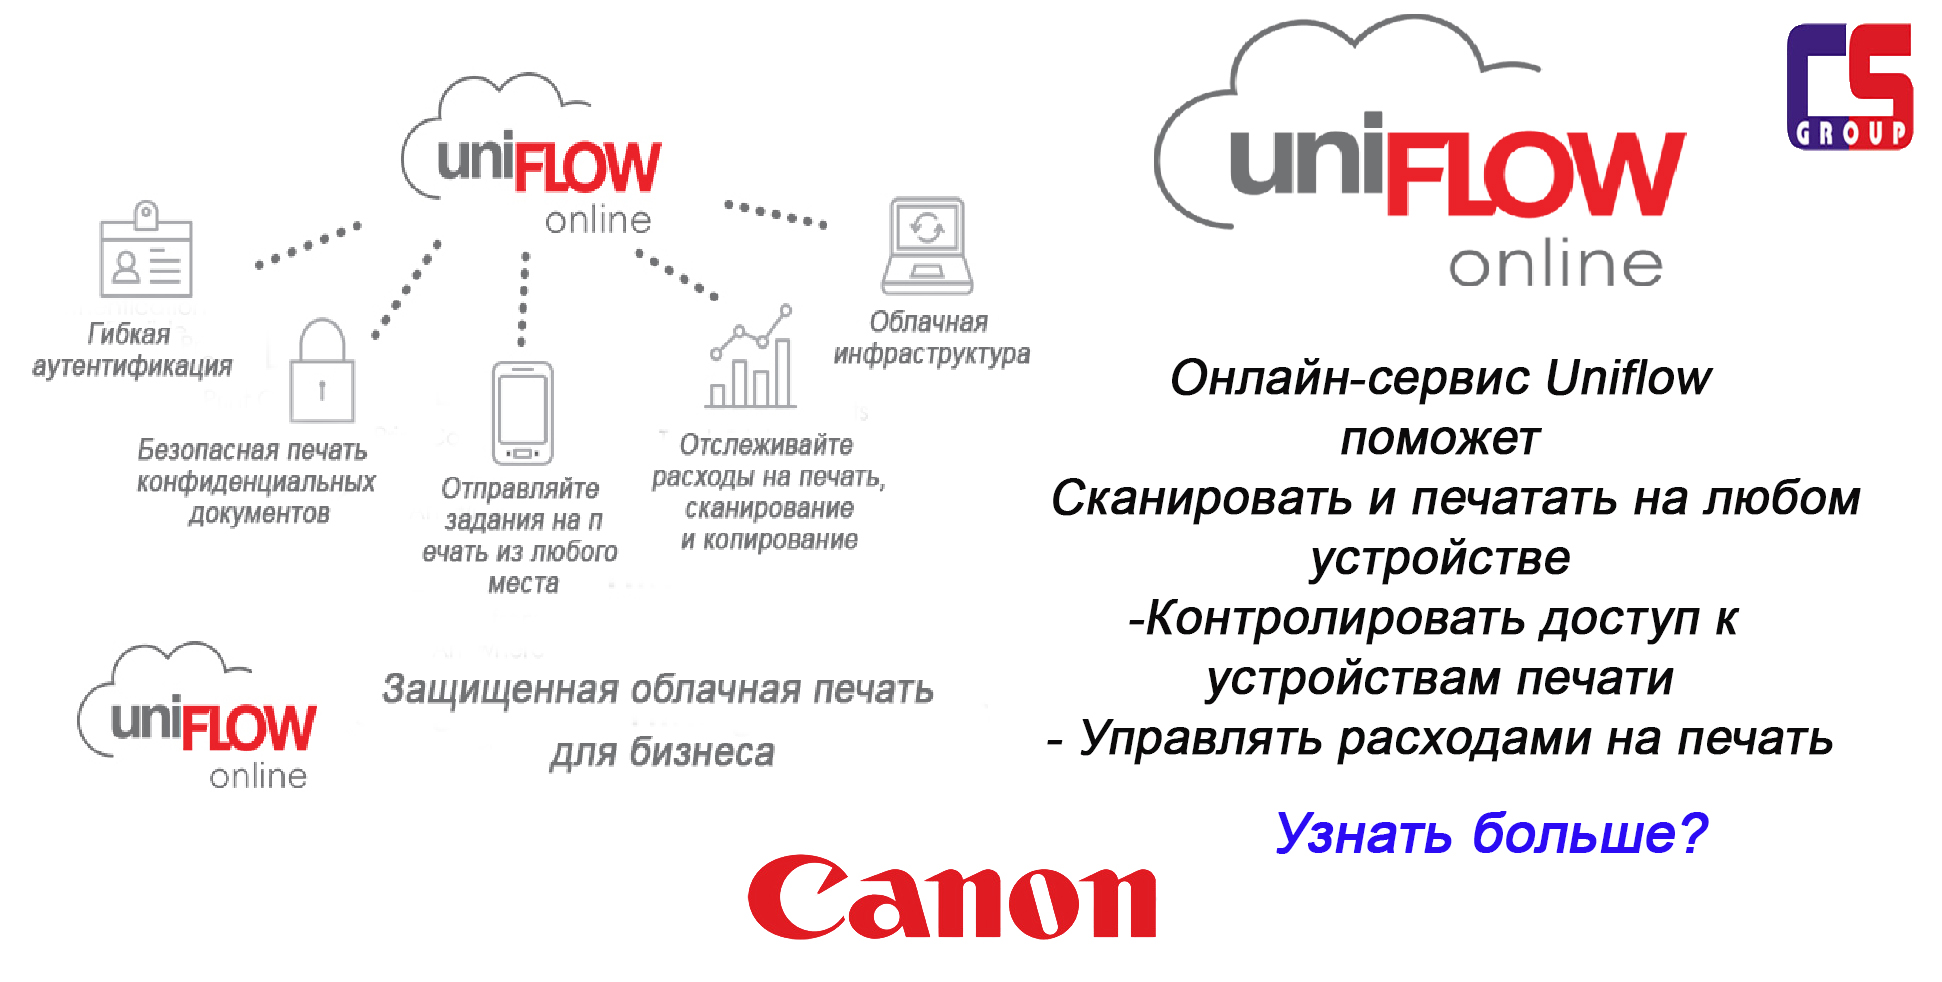 Uniflow Online